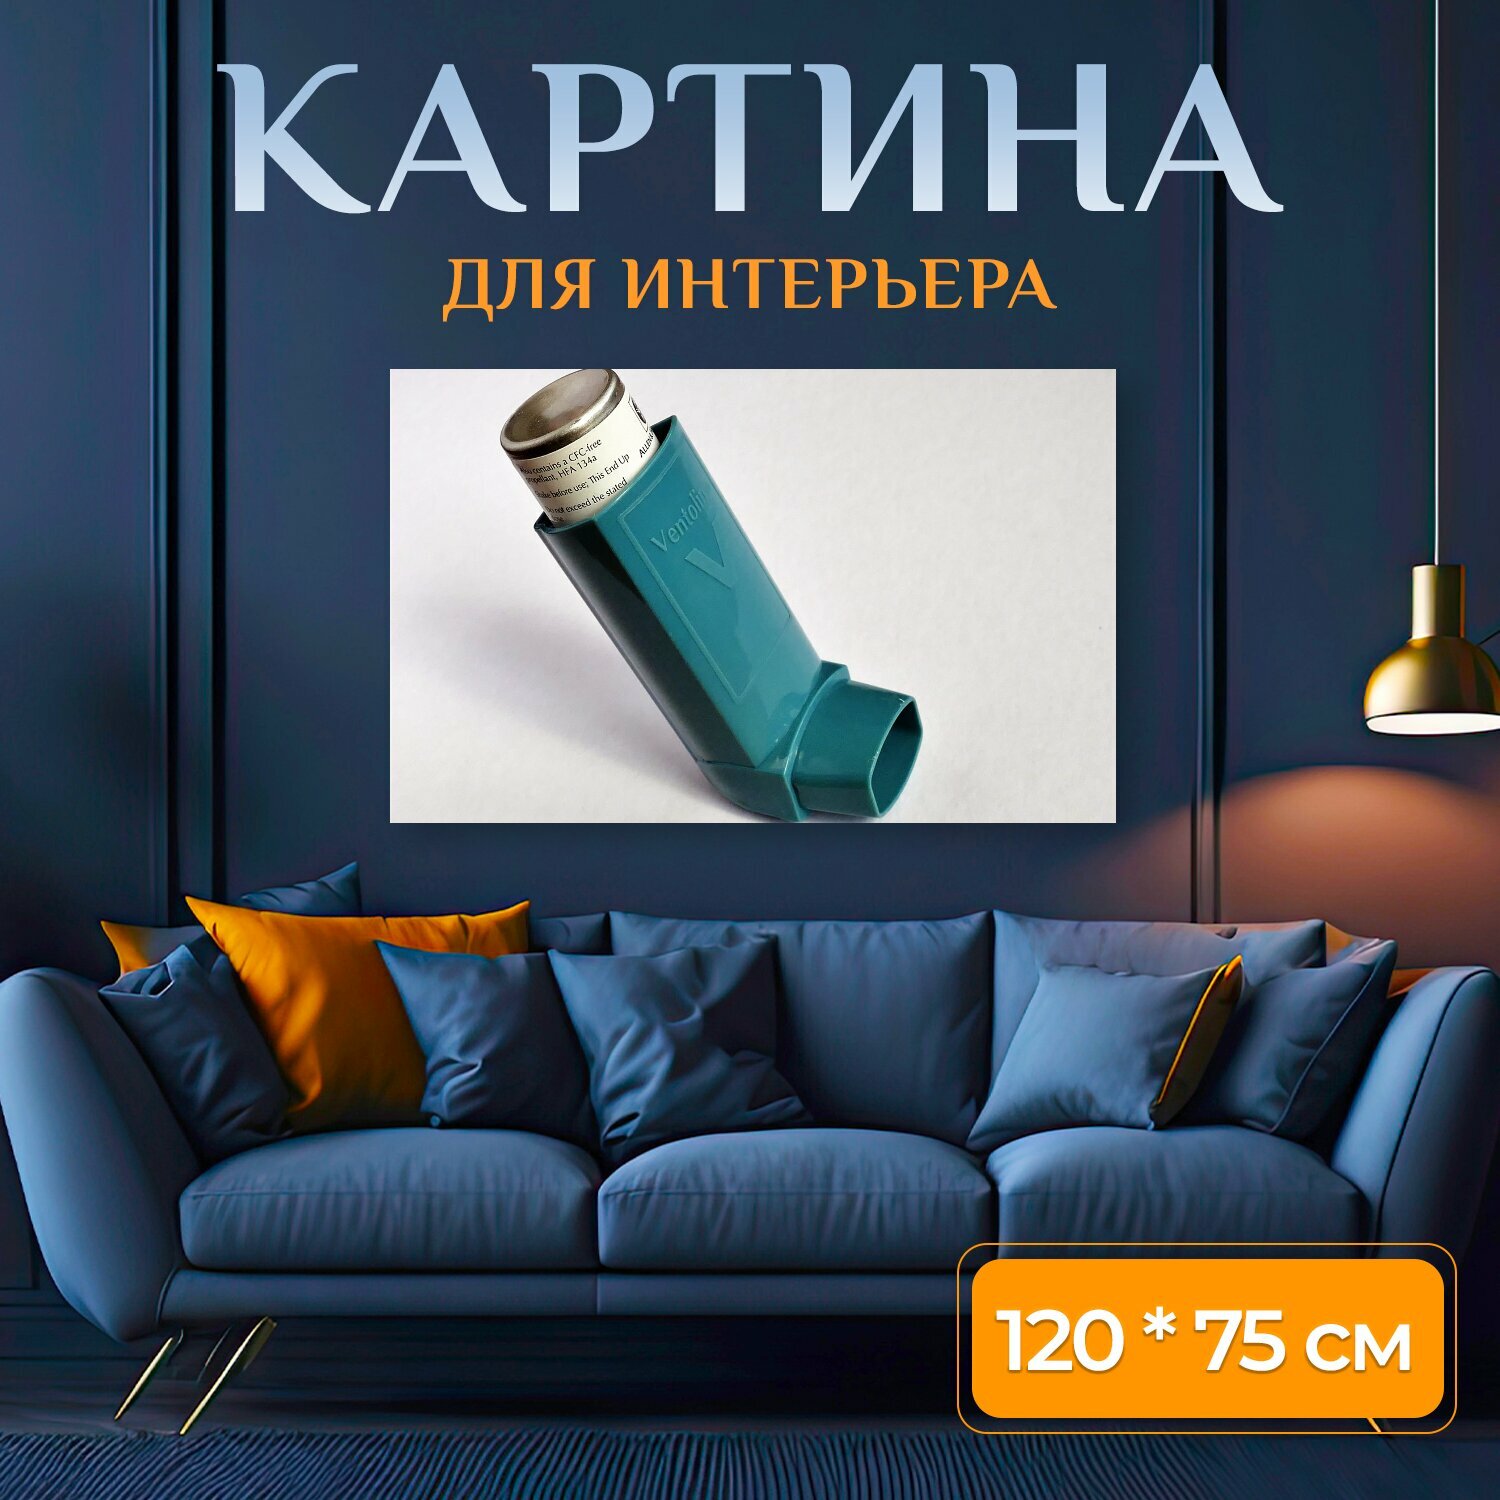 Картина на холсте "Астма вентолин дышать" на подрамнике 120х75 см. для интерьера